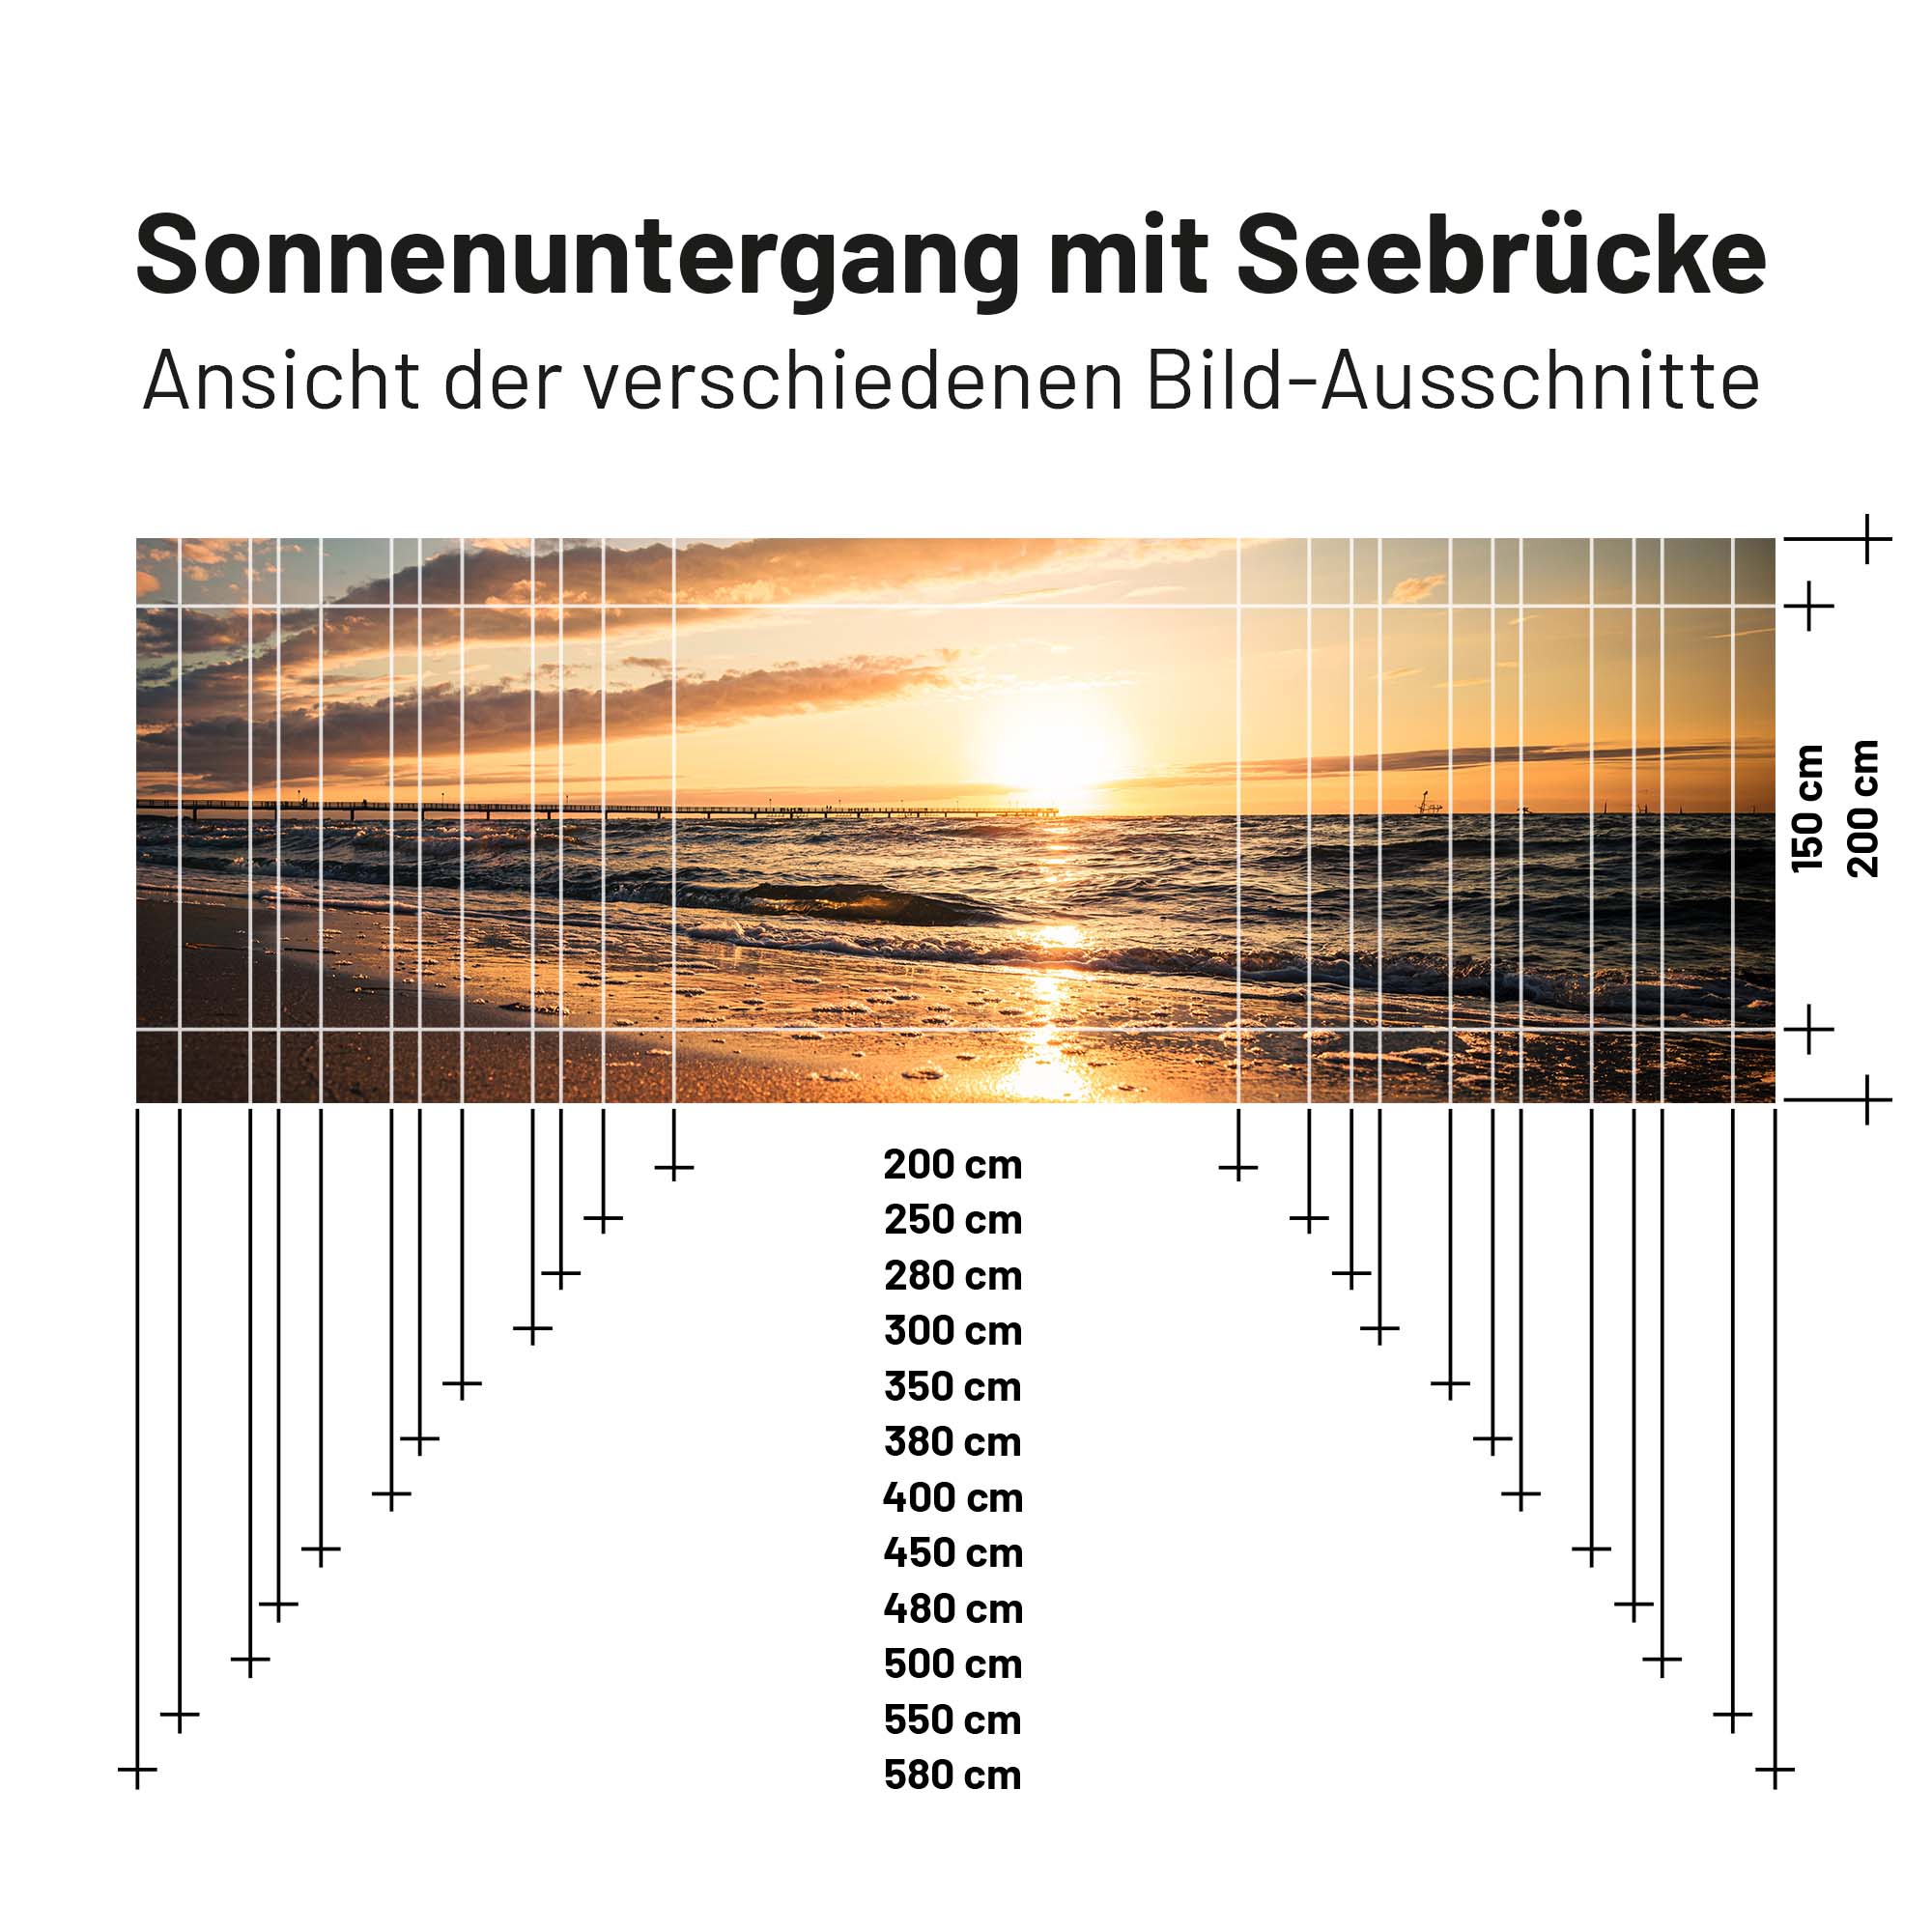 Textil Sonnensegel SONNENUNTERGANG MIT SEEBRÜCKE 200cm Hoch